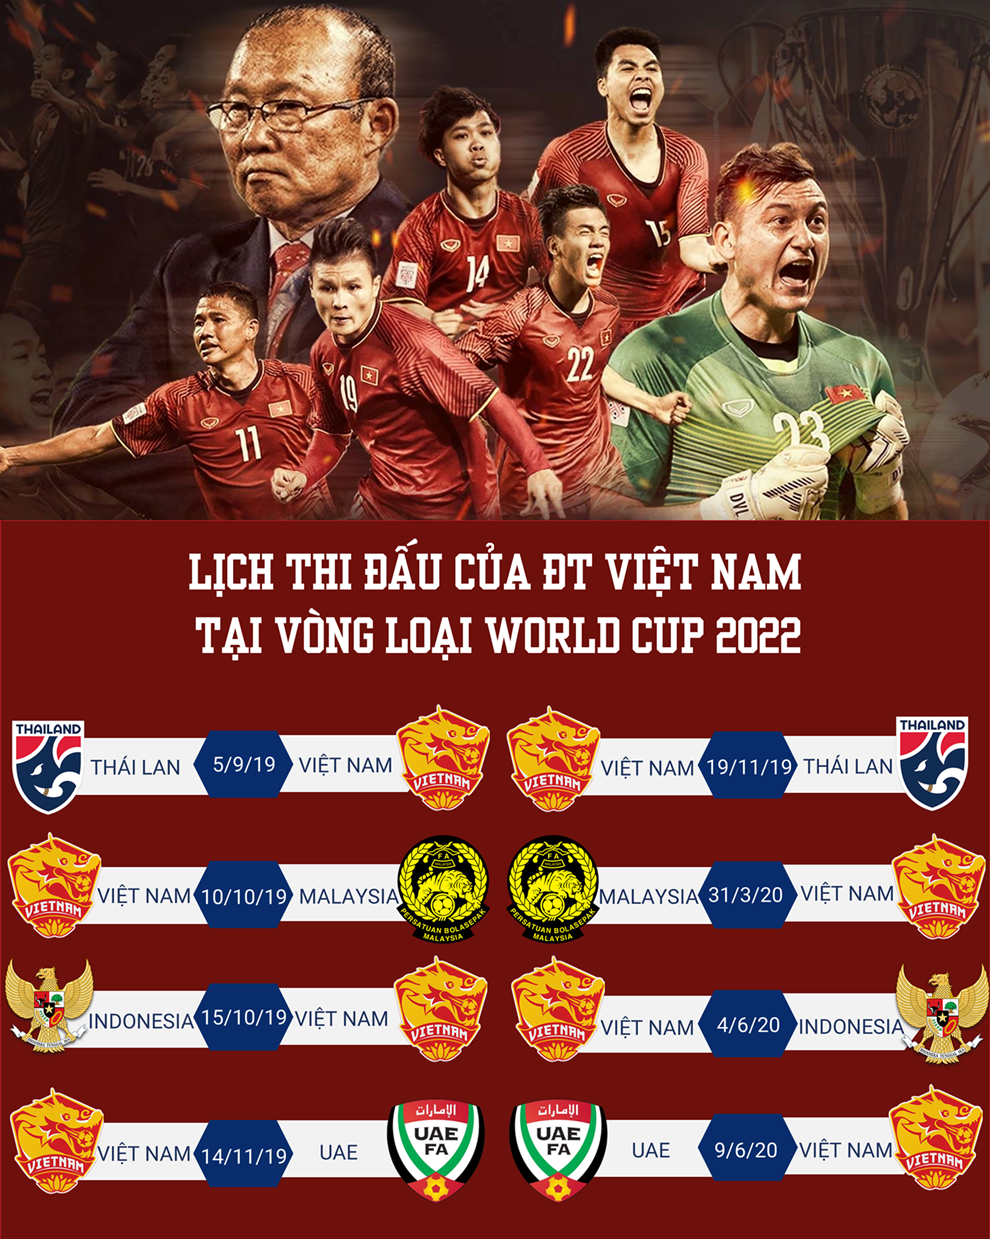 Lịch thi đấu của ĐT Việt Nam tại Vòng loại World Cup 2022